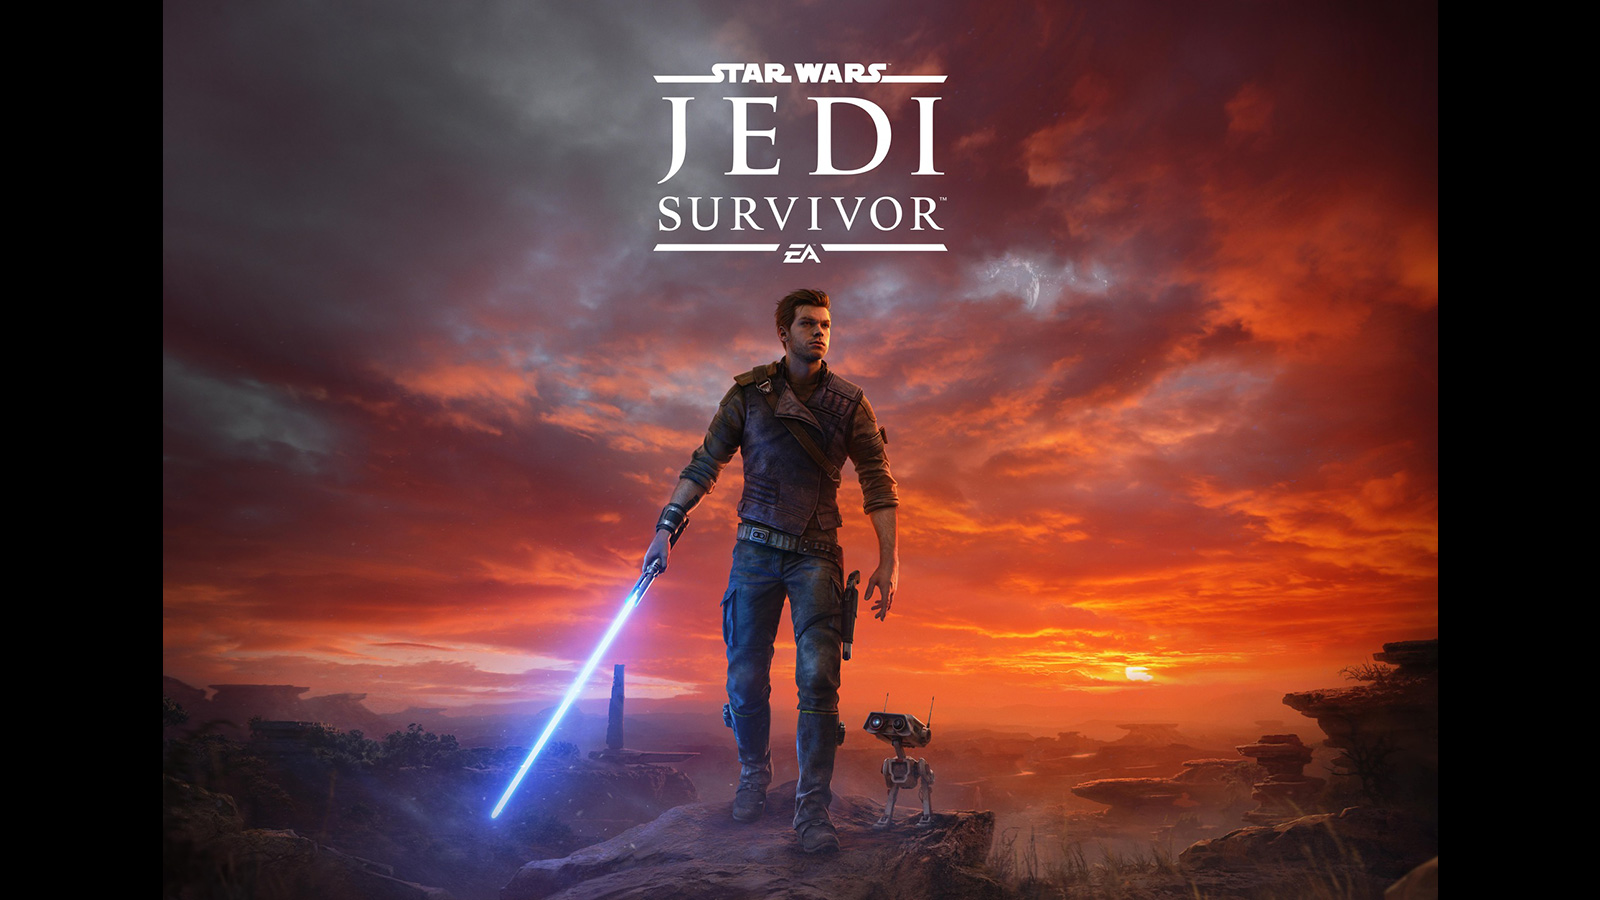 Star Wars Jedi: Survivor Gameplay To Be Revealed 12/8/22